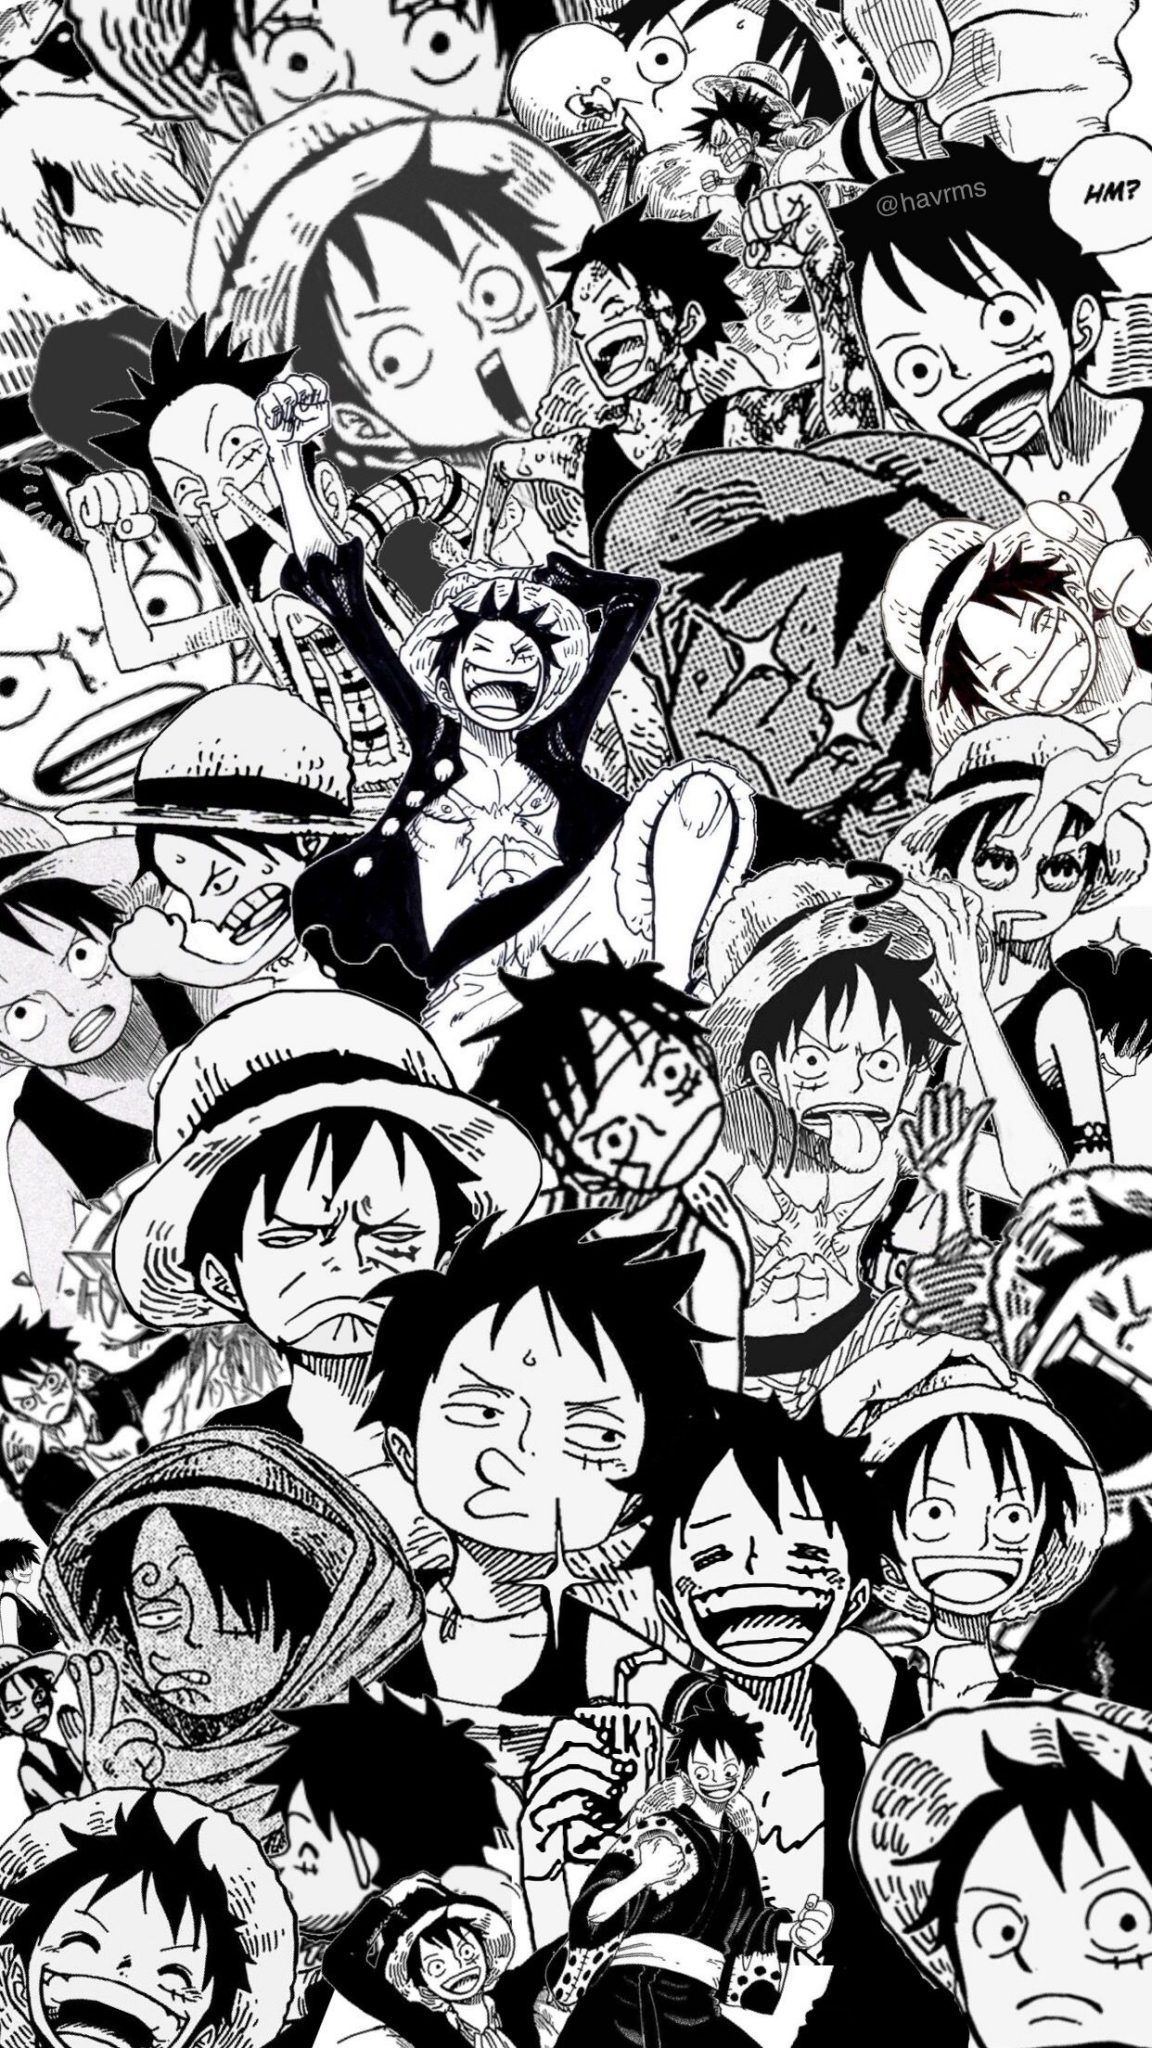 Bạn yêu thích bộ truyện One Piece? Đừng bỏ lỡ bức hình nền đen trắng cực độc của nó! Với thời gian vàng muốn chớp ngay, bạn sẽ cảm nhận được sức mạnh của chiến binh hải tặc trong từng đường nét đen trắng mạnh mẽ và mãnh liệt.